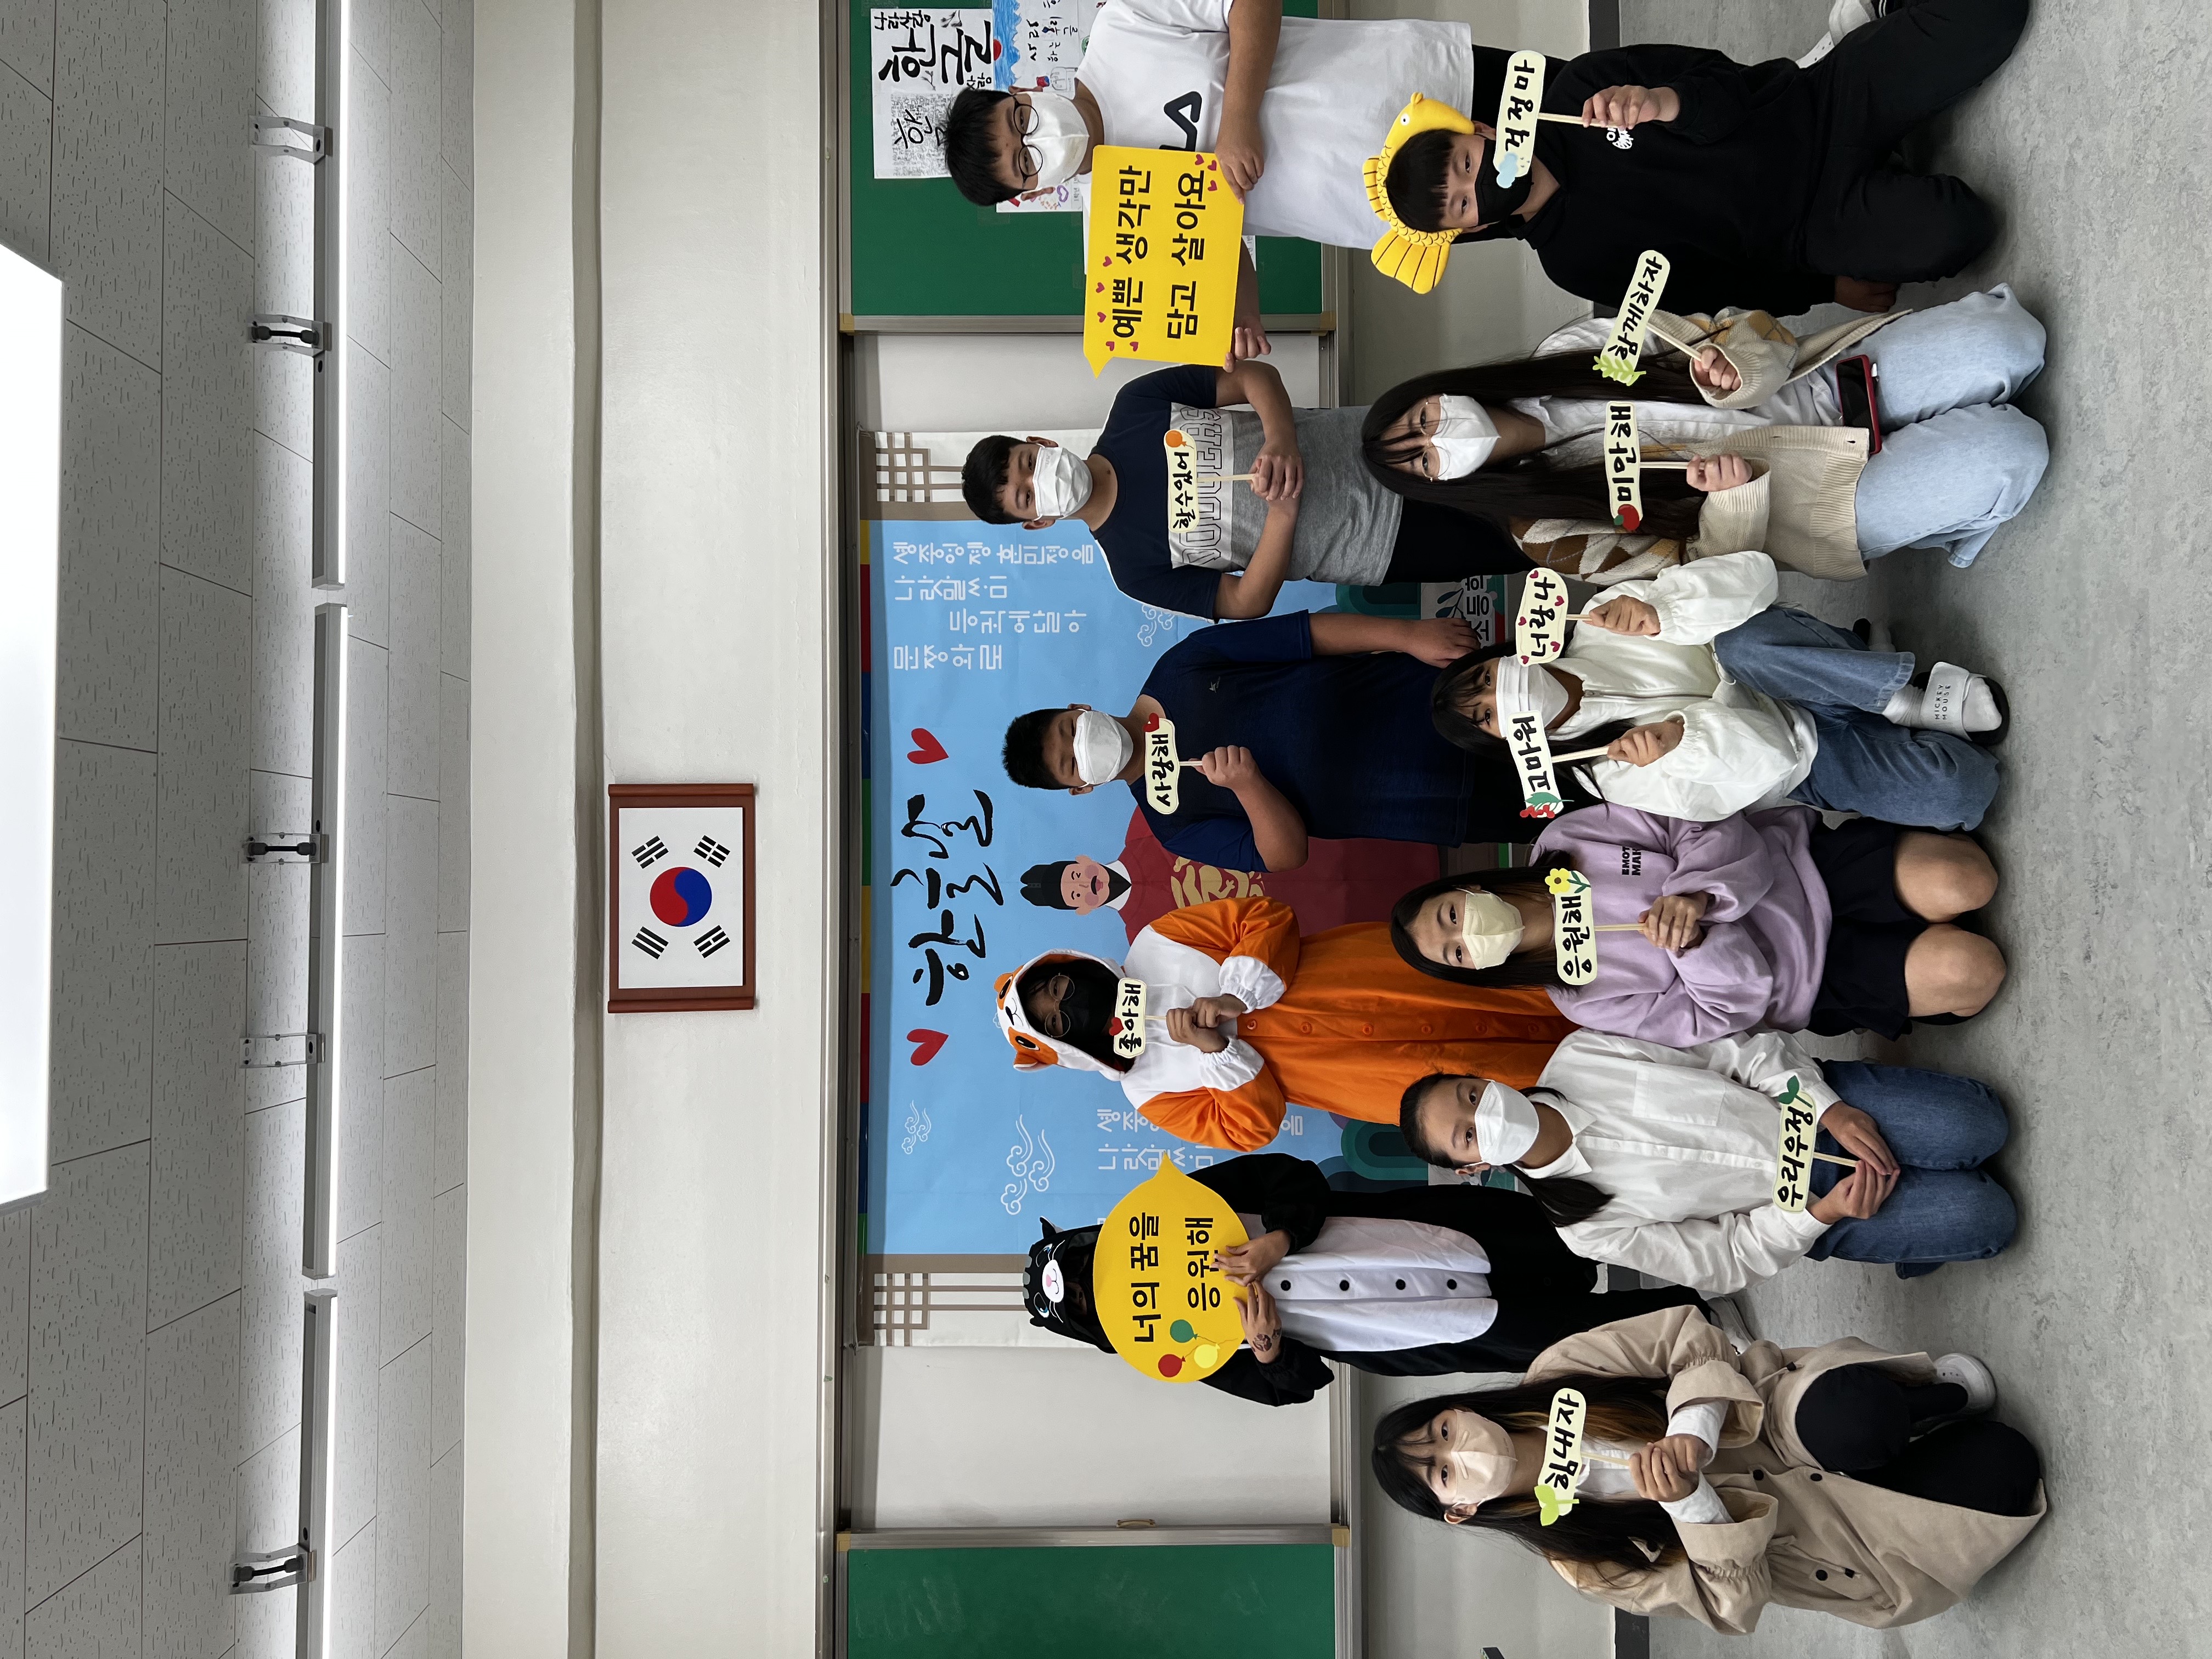 [일반] 2022년 10월 6일 학부모회 주관 한글날 캠페인 활동 사진입니다.(6학년)의 첨부이미지 4